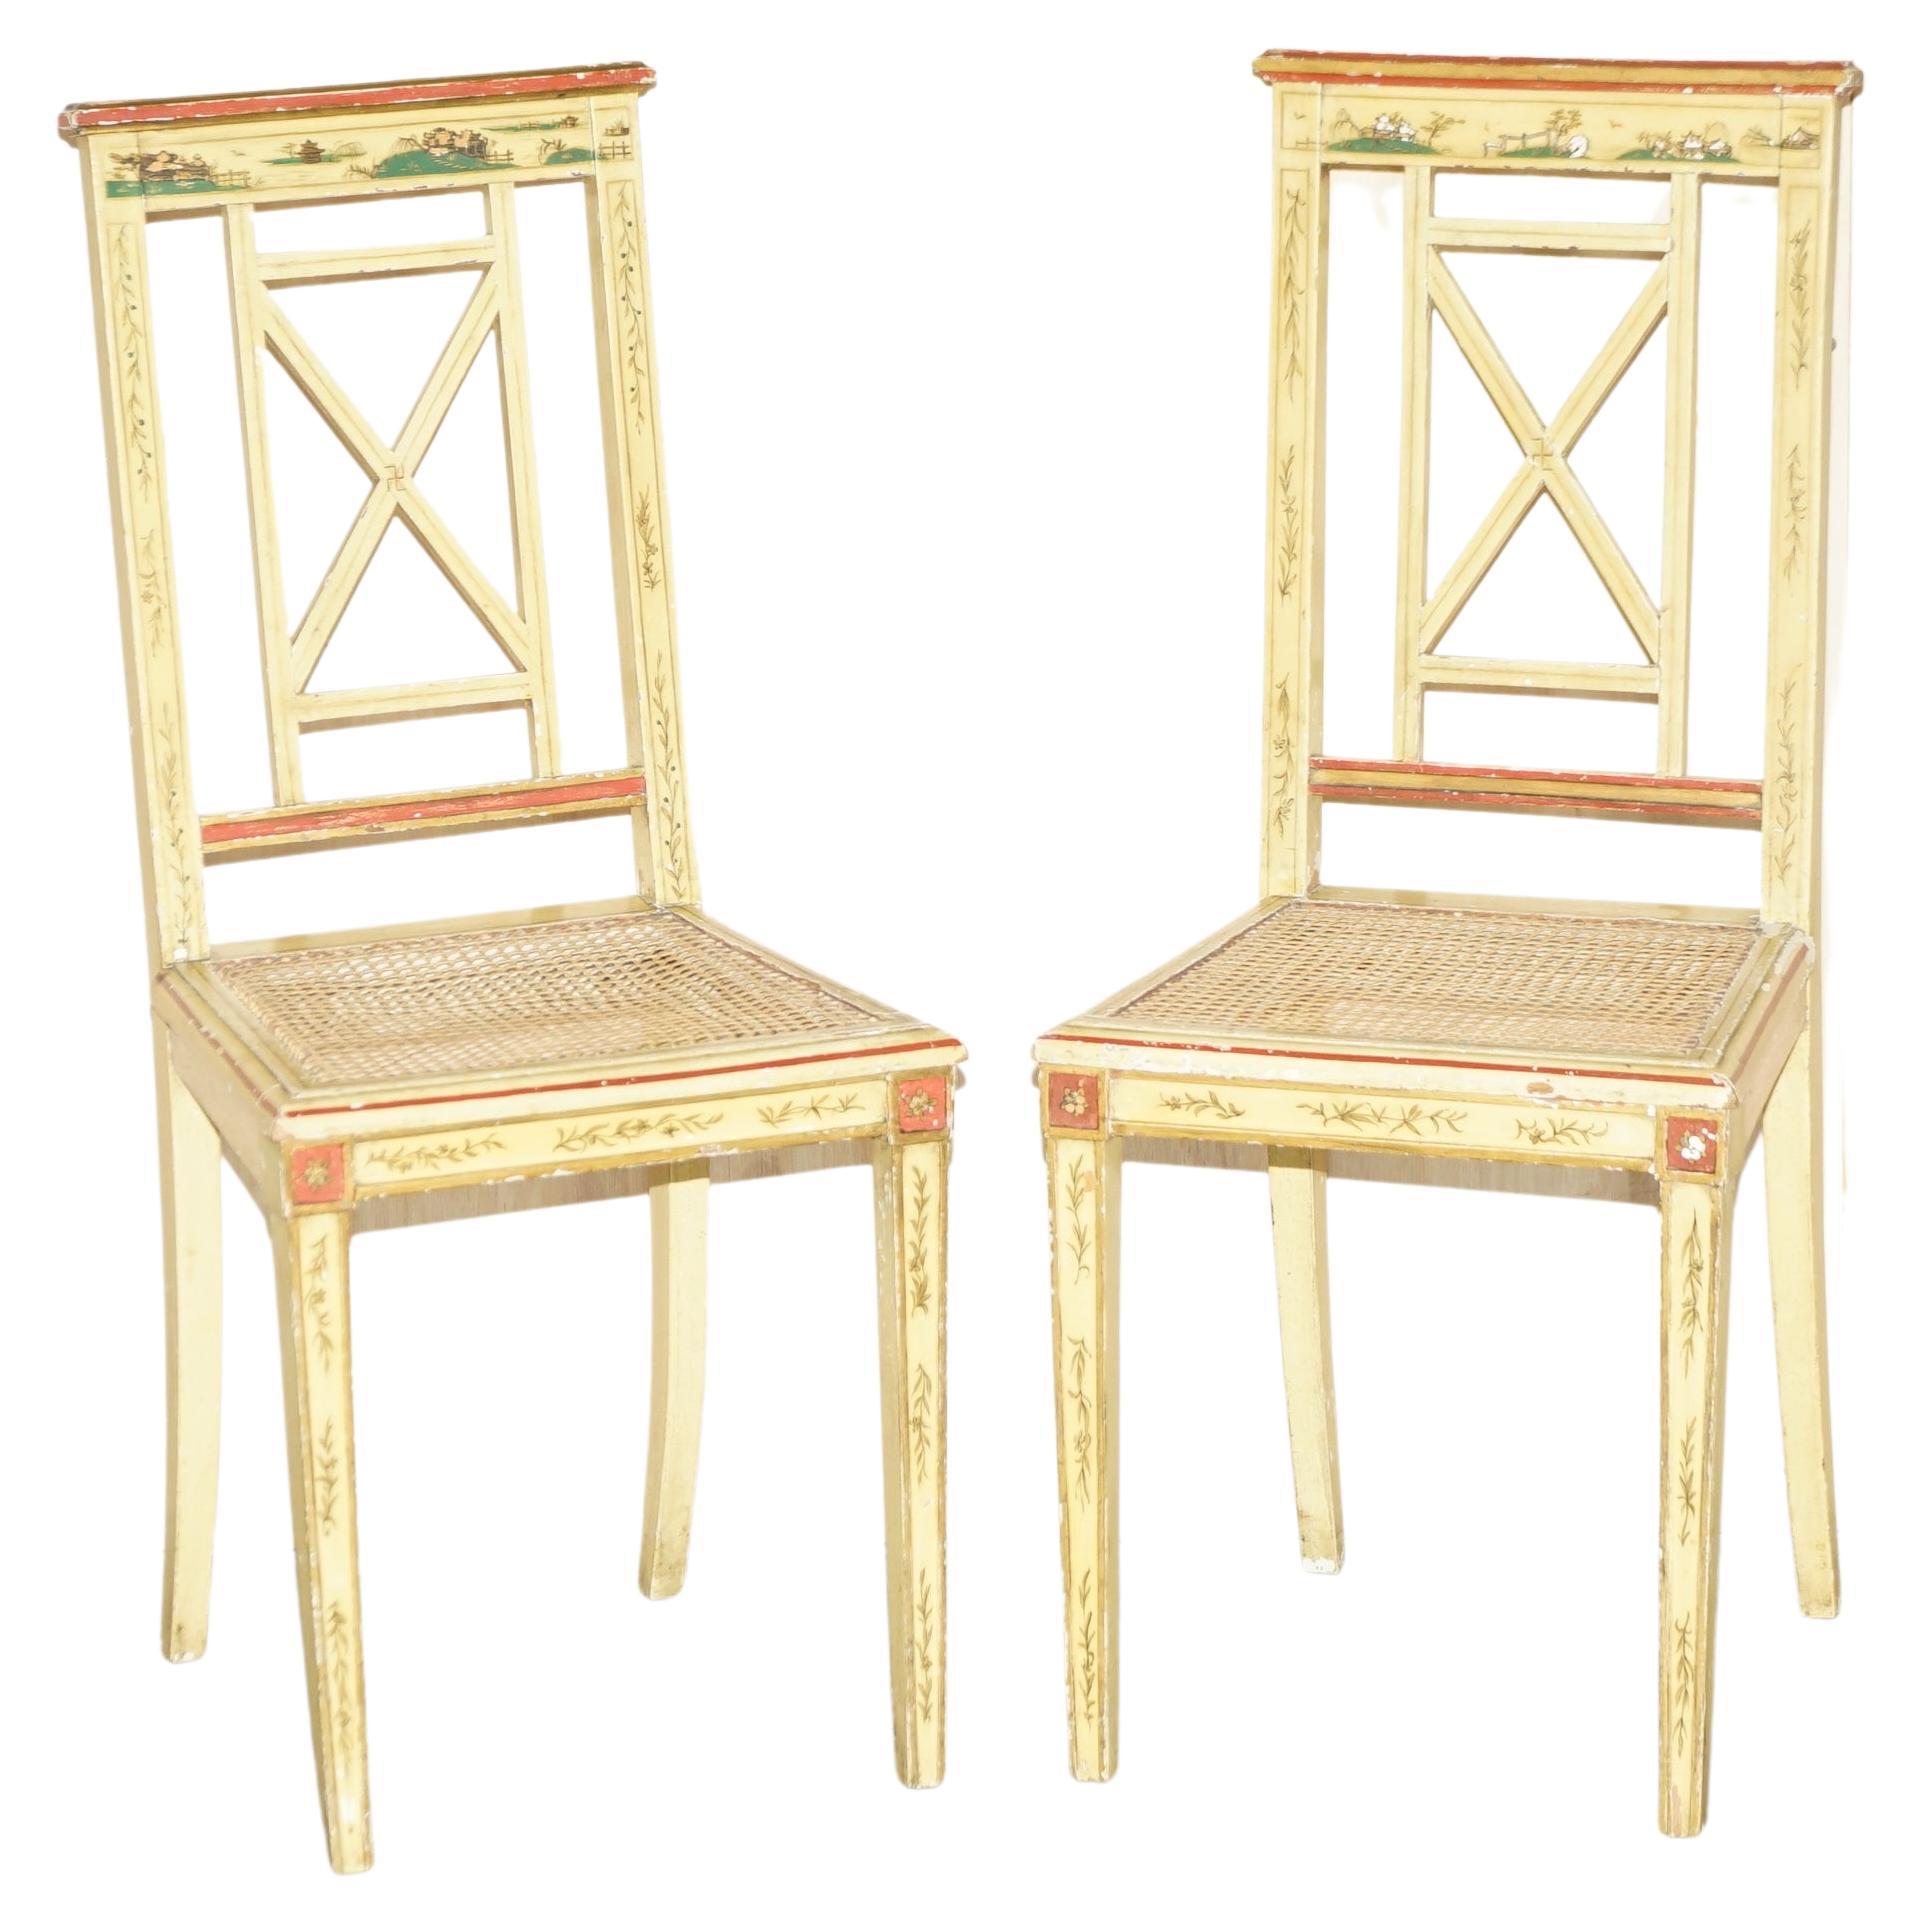 Paire de chaises Bergères chinoises de style chinoiseries, peintes à la main et laquées